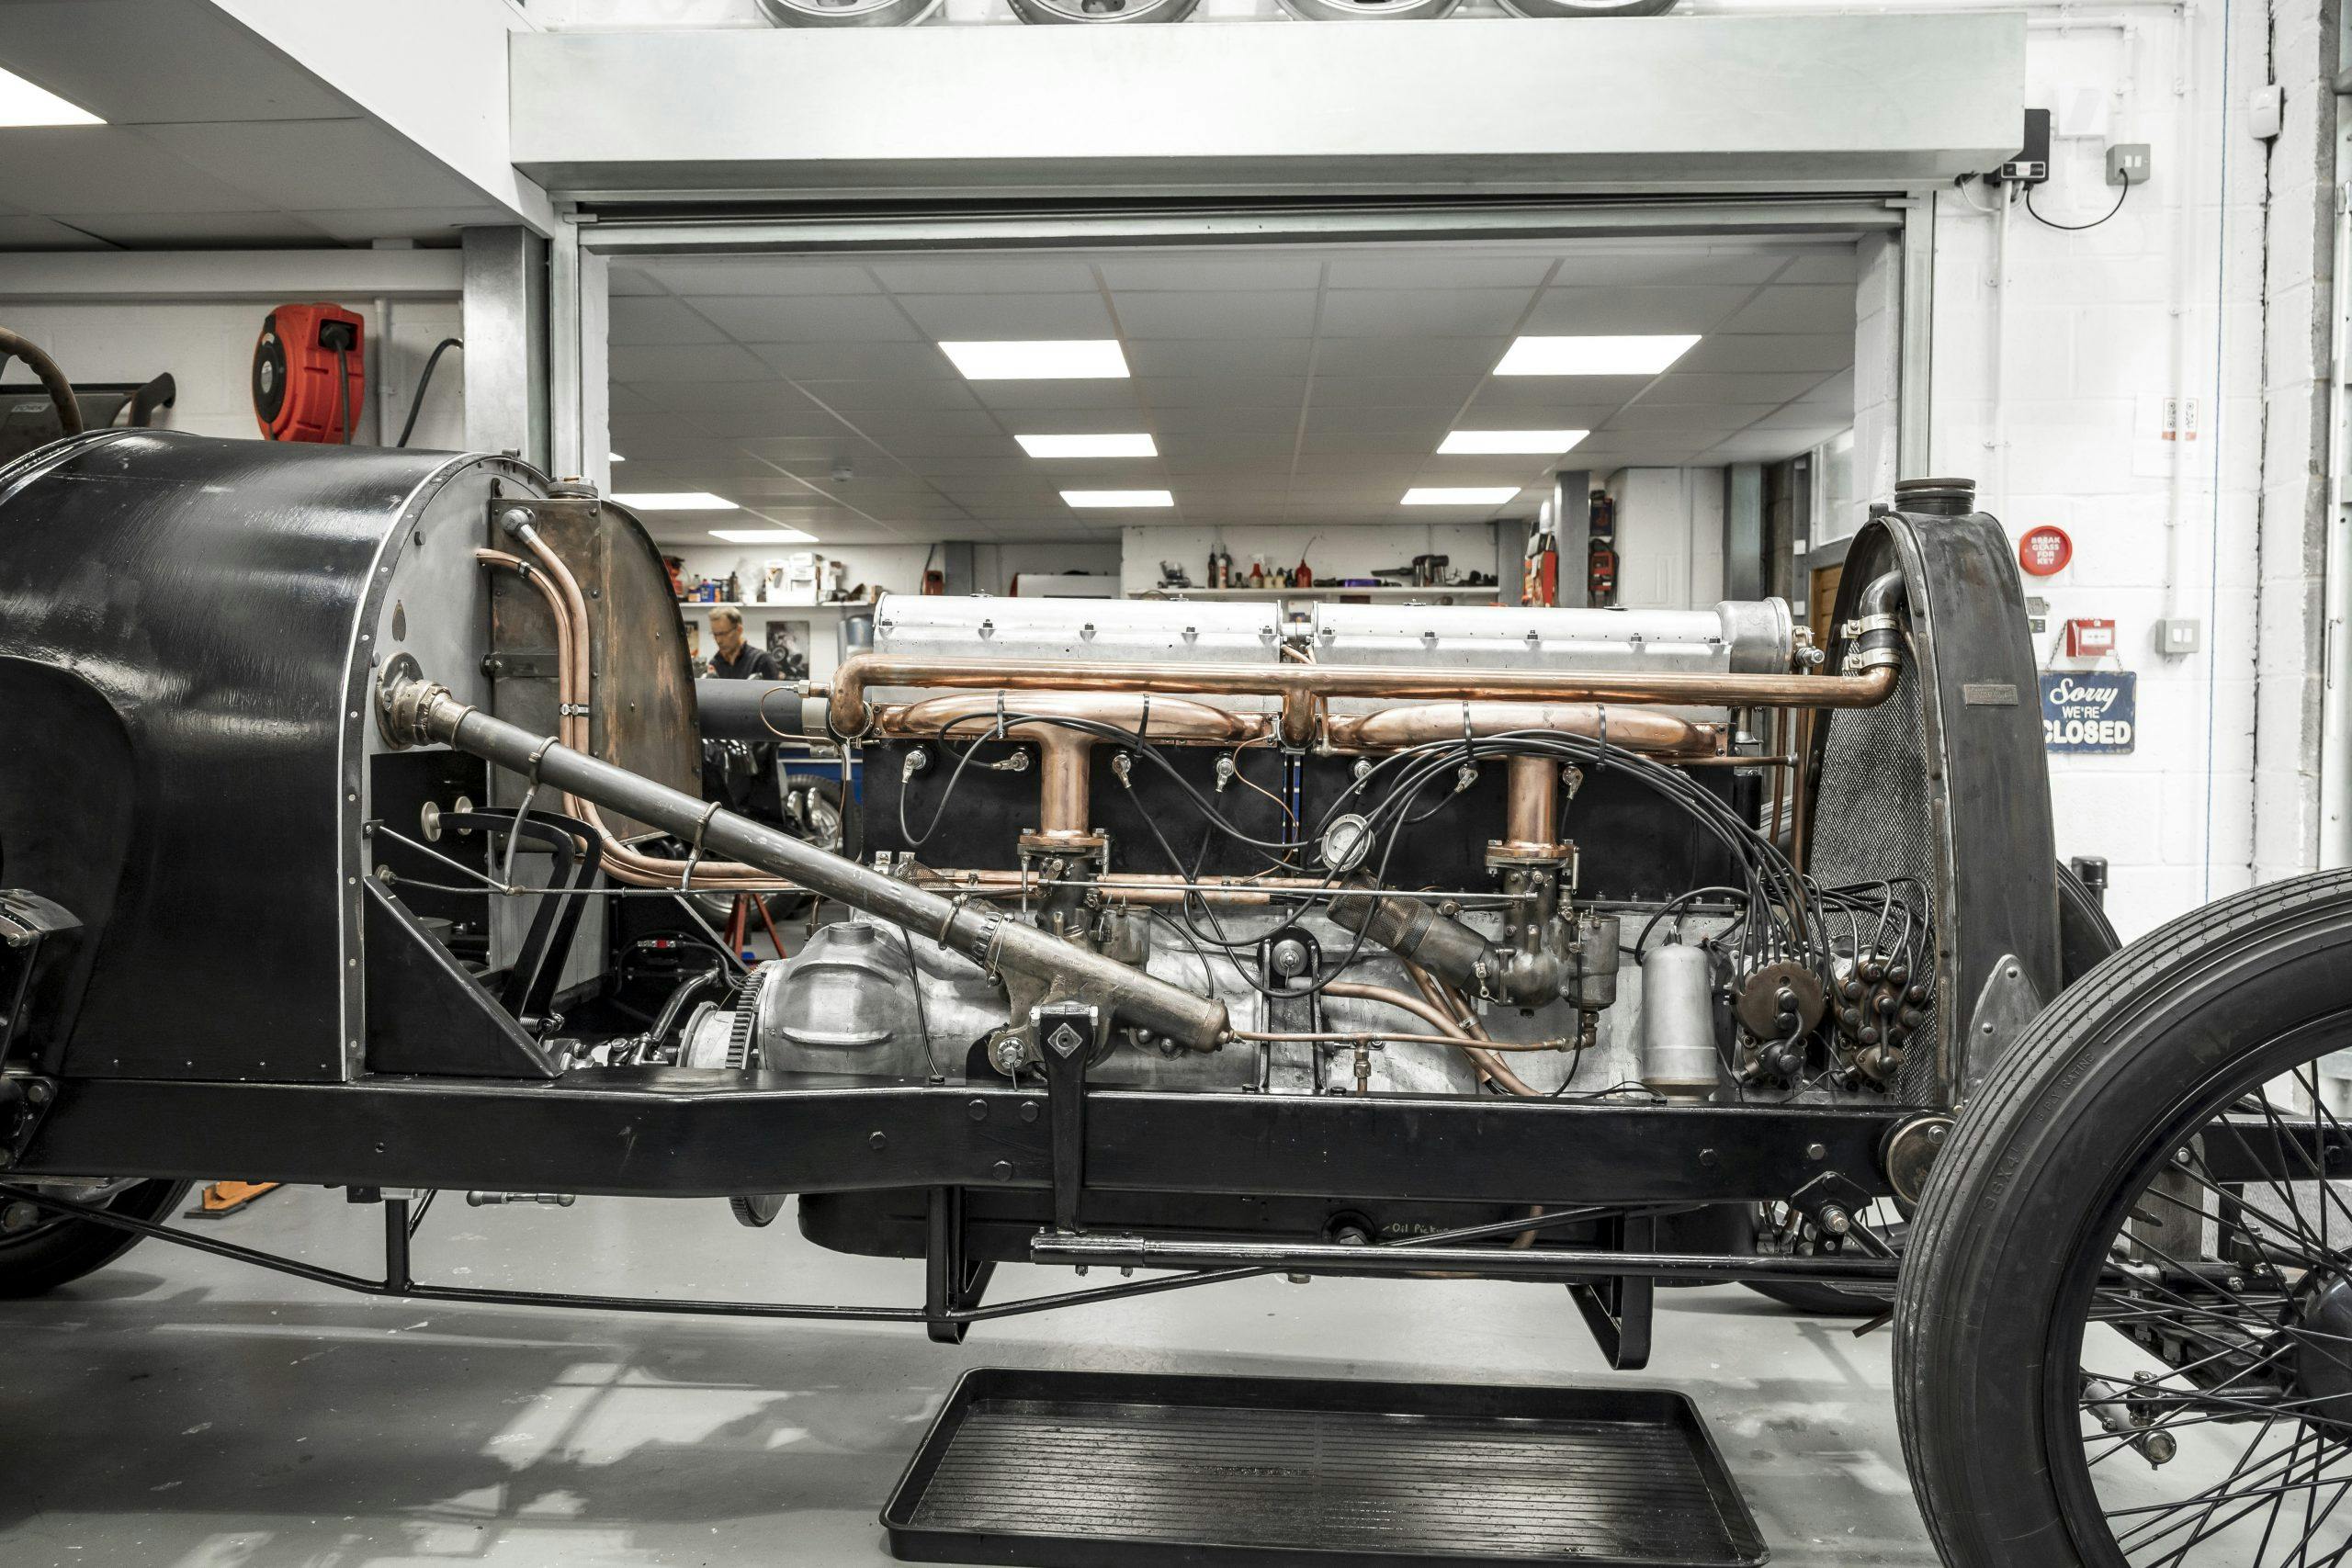 Tula Precision bugatti engine side profile